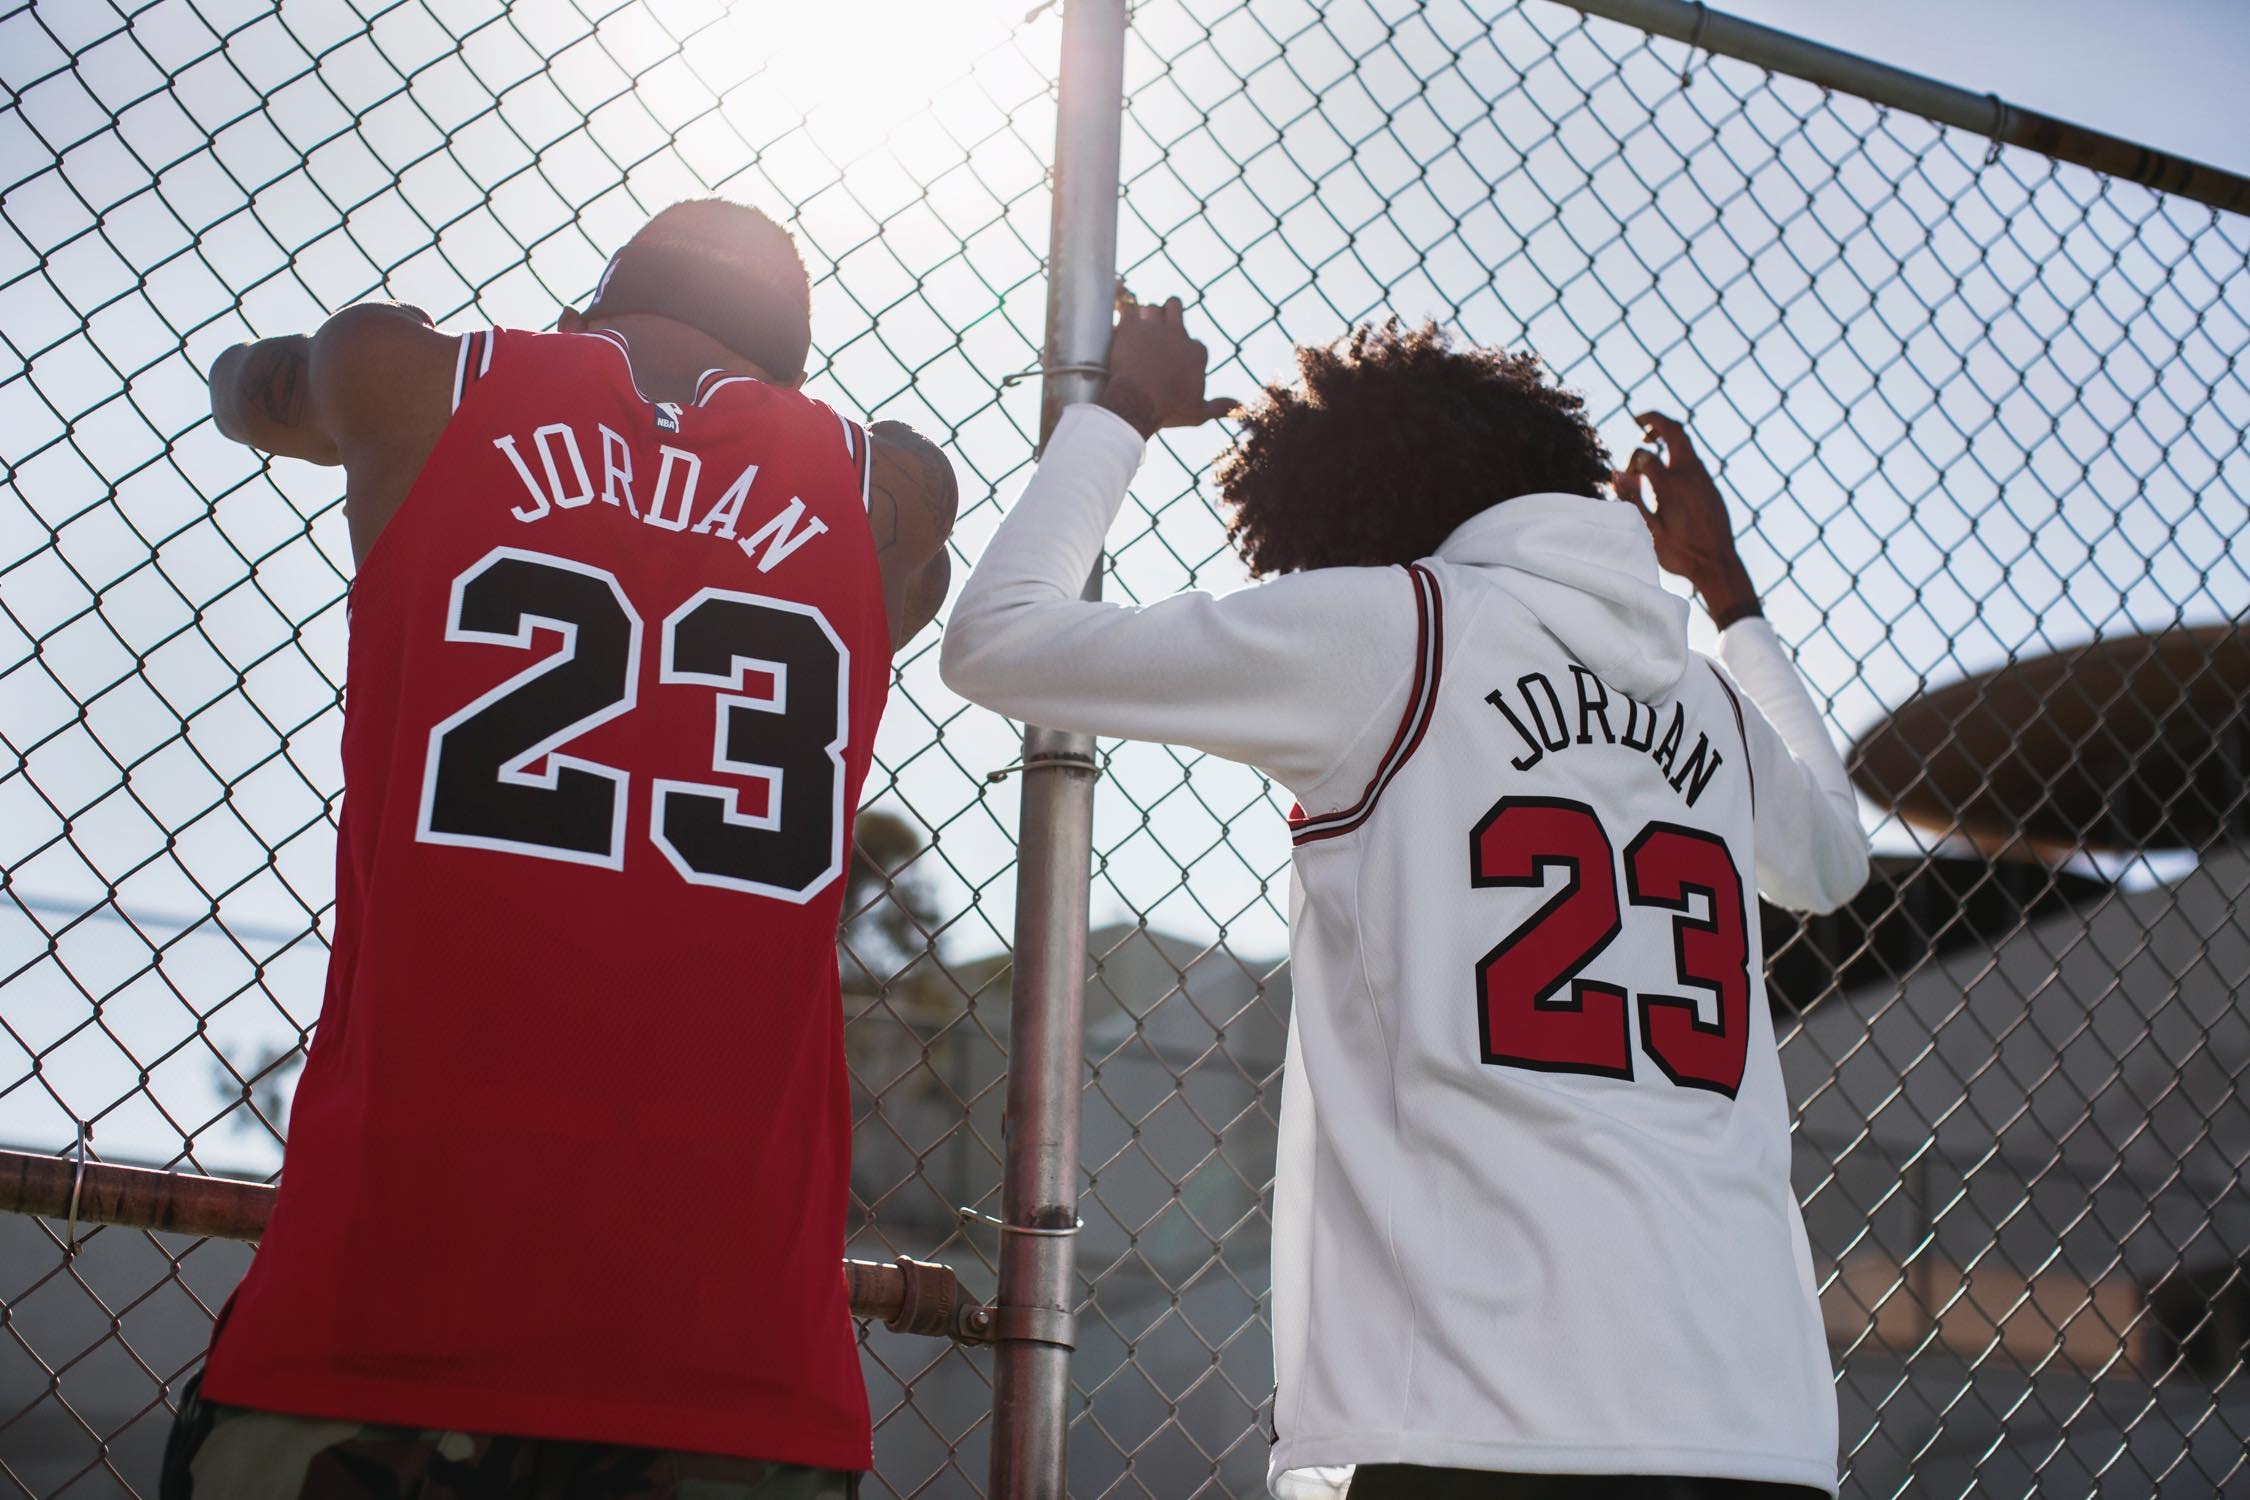 Nike がシカゴ・ブルズ時代のマイケル・ジョーダンのユニフォームを復刻 「Netflix」で公開されるバスケットボールの神様の最新ドキュメンタリーにフックしたMJファン垂涎のブルズジャージ 「ESPN 」と「Netflix」によるMichael Jordan（マイケル・ジョーダン）のドキュメンタリー制作発表に引き続き、〈Nike（ナイキ）〉が同作『The Last Dance（原題）』のリリースを記念して、シカゴ・ブルズ時代のMJのジャージを復刻するようだ。このMJファン垂涎のアイテムはNBA公認ジャージにも組み込まれているICチップ、NikeConnectを搭載し、2019年公開予定の『The Last Dance』をいち早く視聴できる仕様に。発売時期は明かされていないが、価格は特別な包装が施されたAuthenticが400ドル（約44,000円）で、ホーム＆アウェイ展開となるSwingmanが各120ドル（約13,000円）となる見込みだ。  ちなみに、Tinker Hatfield（ティンカー・ハットフィールド）がJordanの55歳の誕生日に贈ったプレゼントは何かご存知？ HYPEBEAST